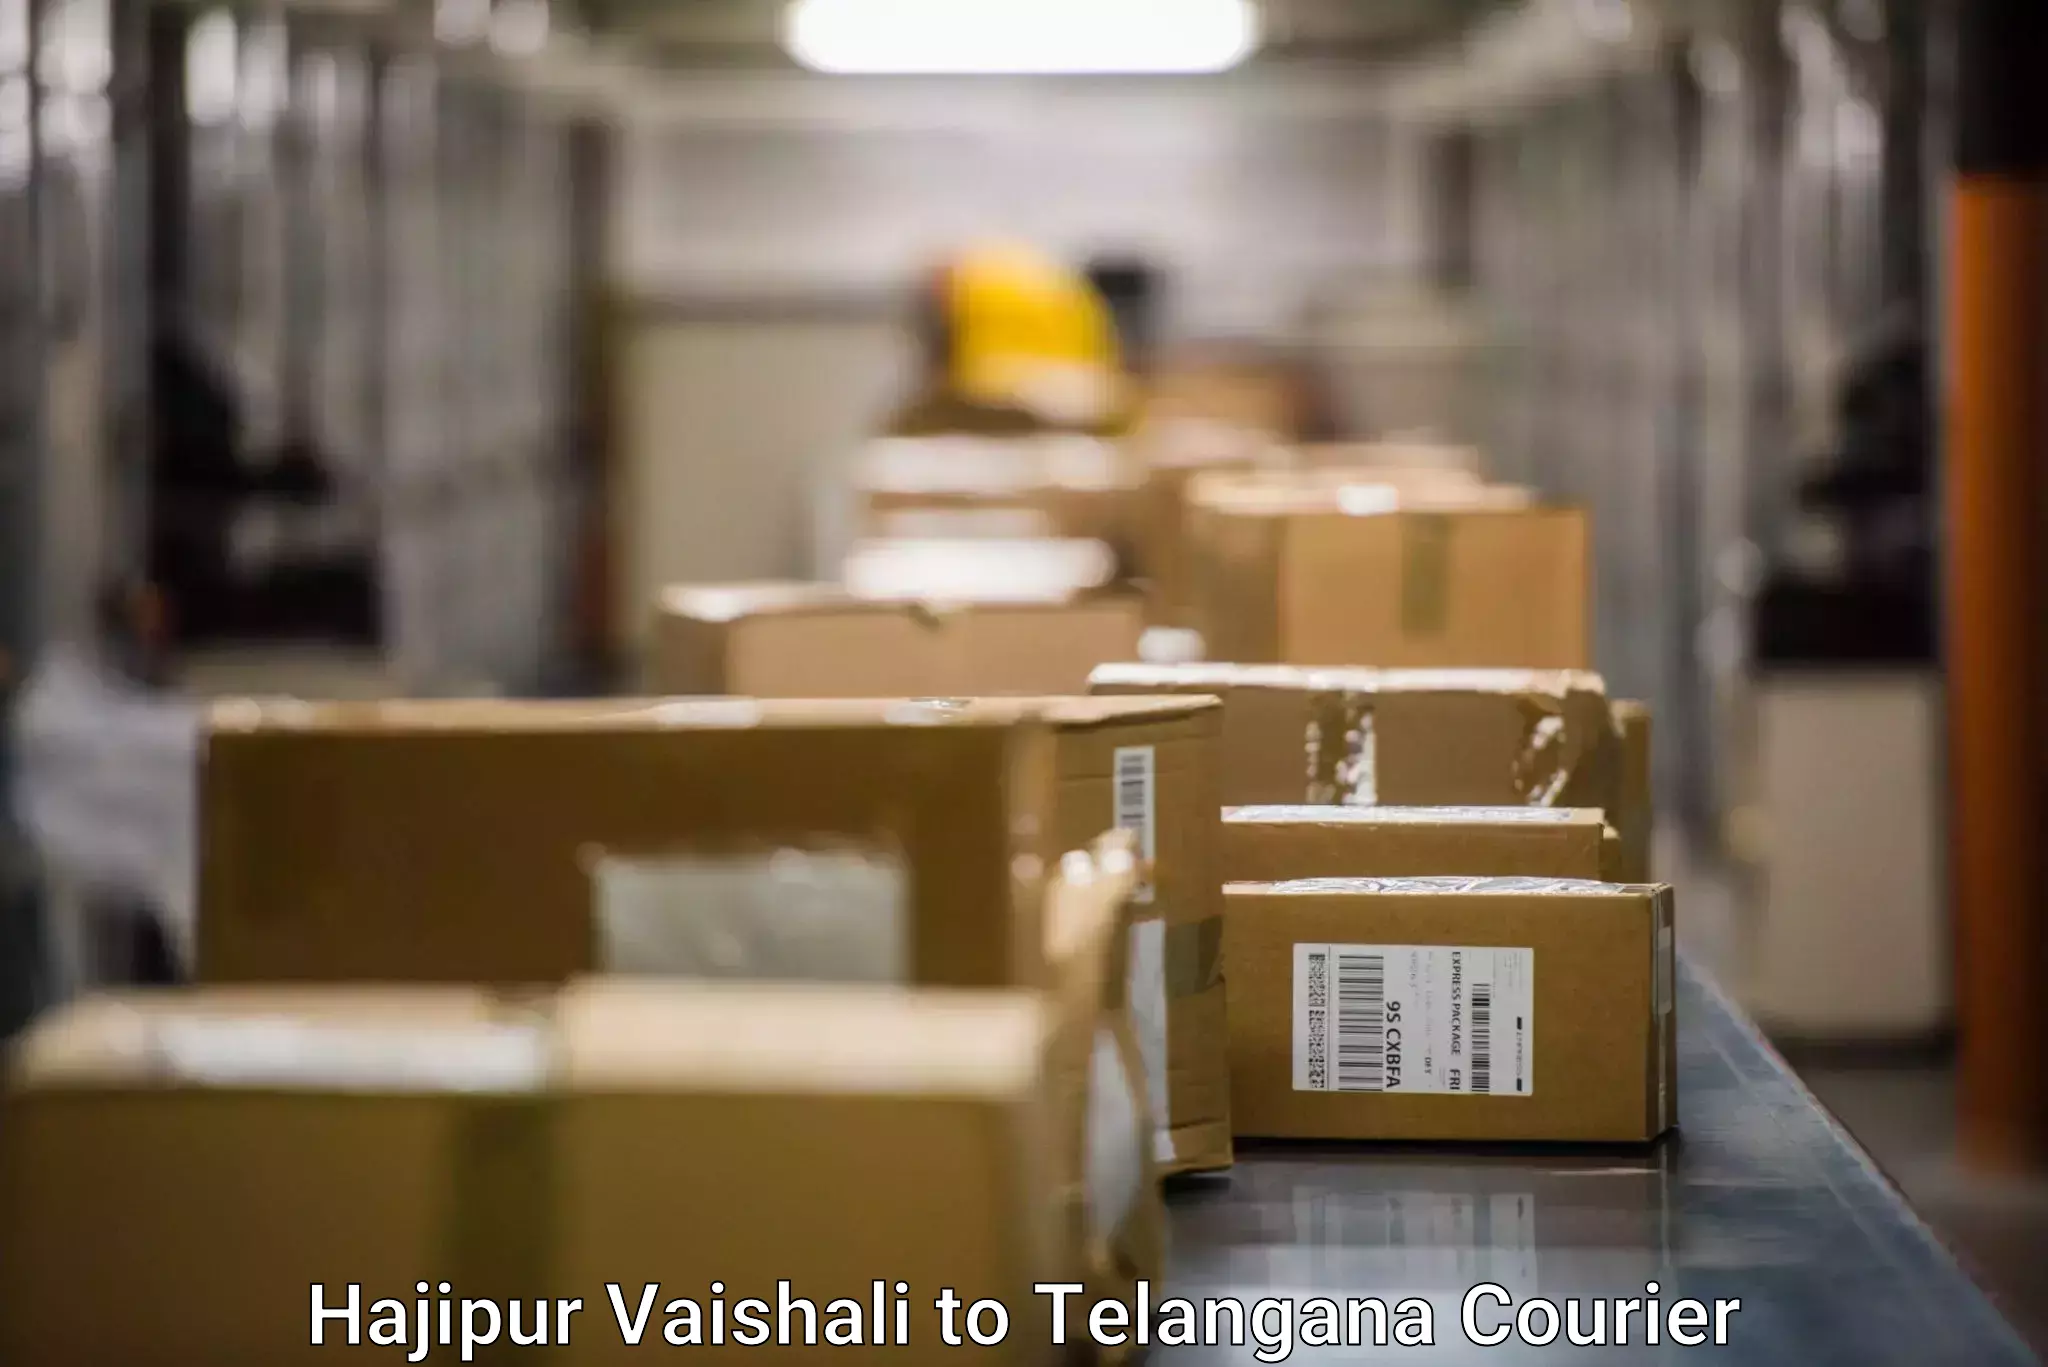 Tech-enabled shipping Hajipur Vaishali to Telangana